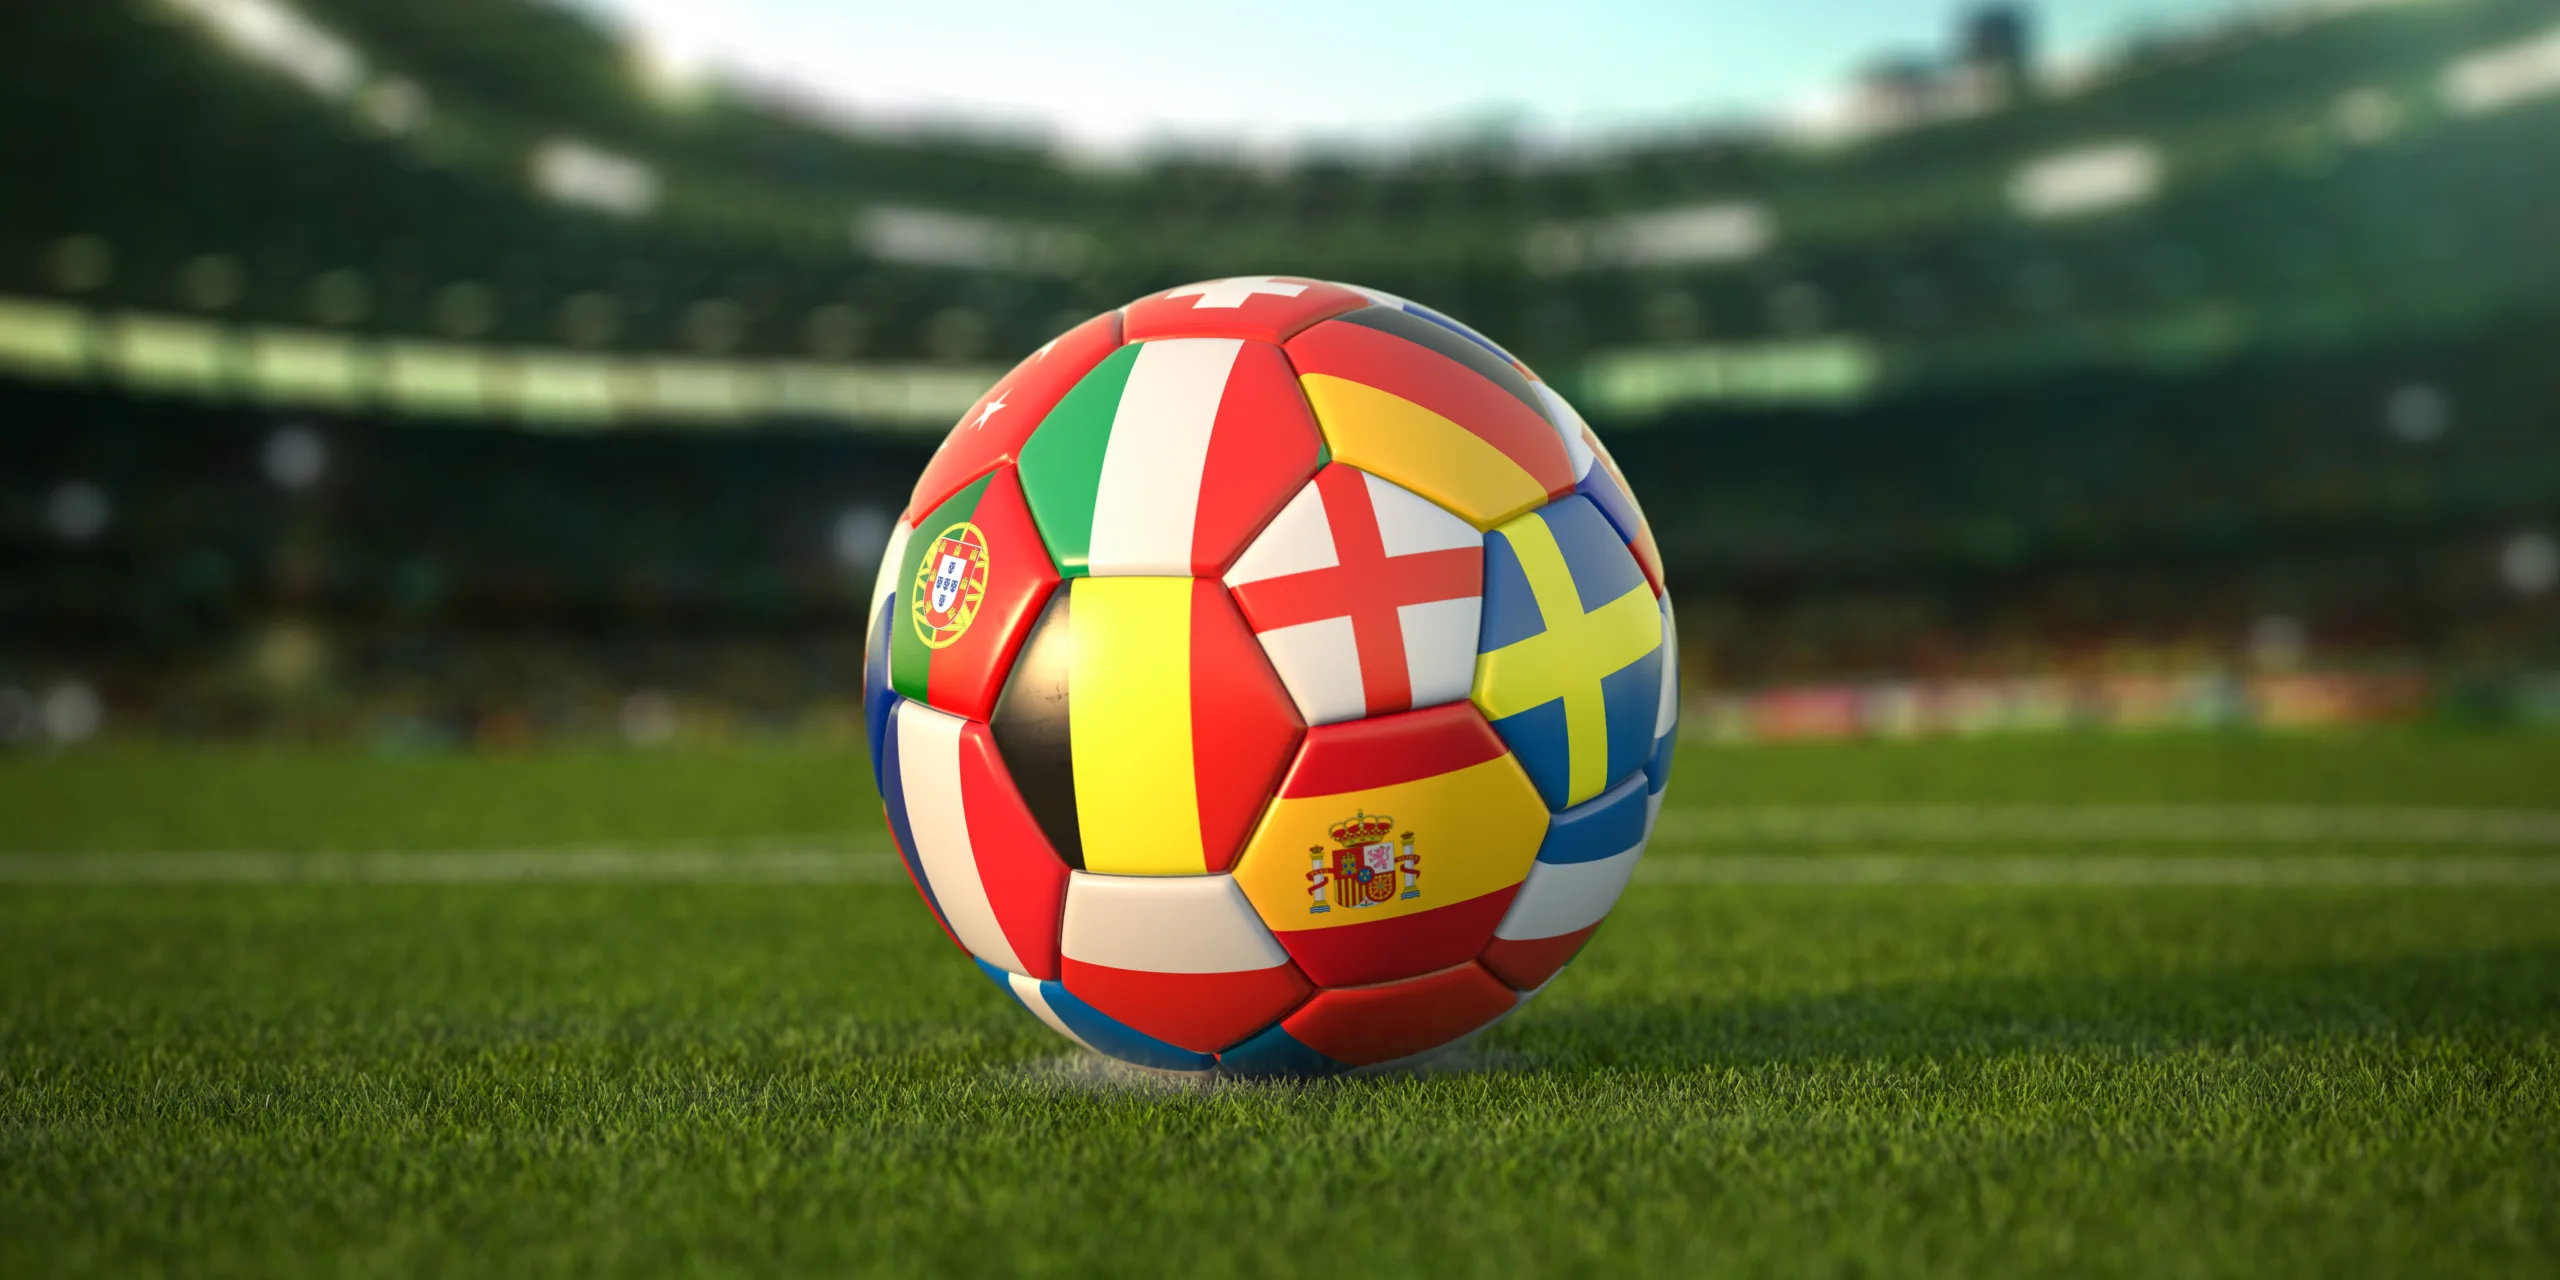 European football ball